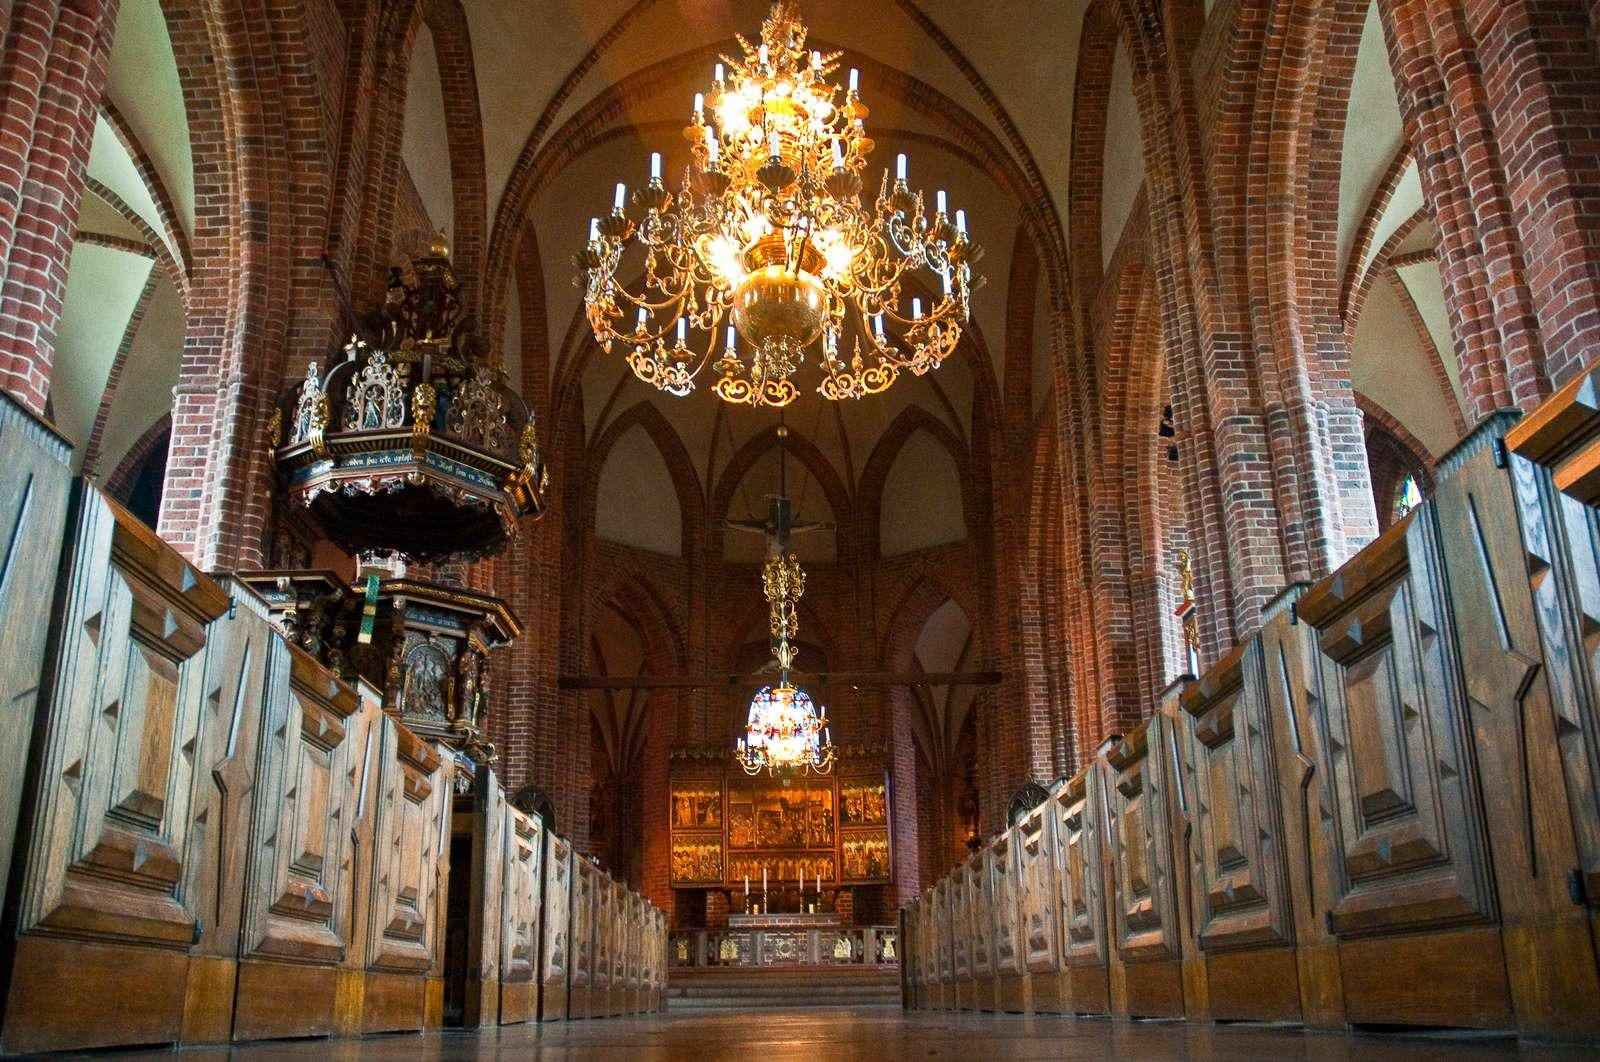 Im Inneren eine große Kirche im gotischen Stil. Das Podium geradeaus und zwei große Kronleuchter hängen von der Decke.